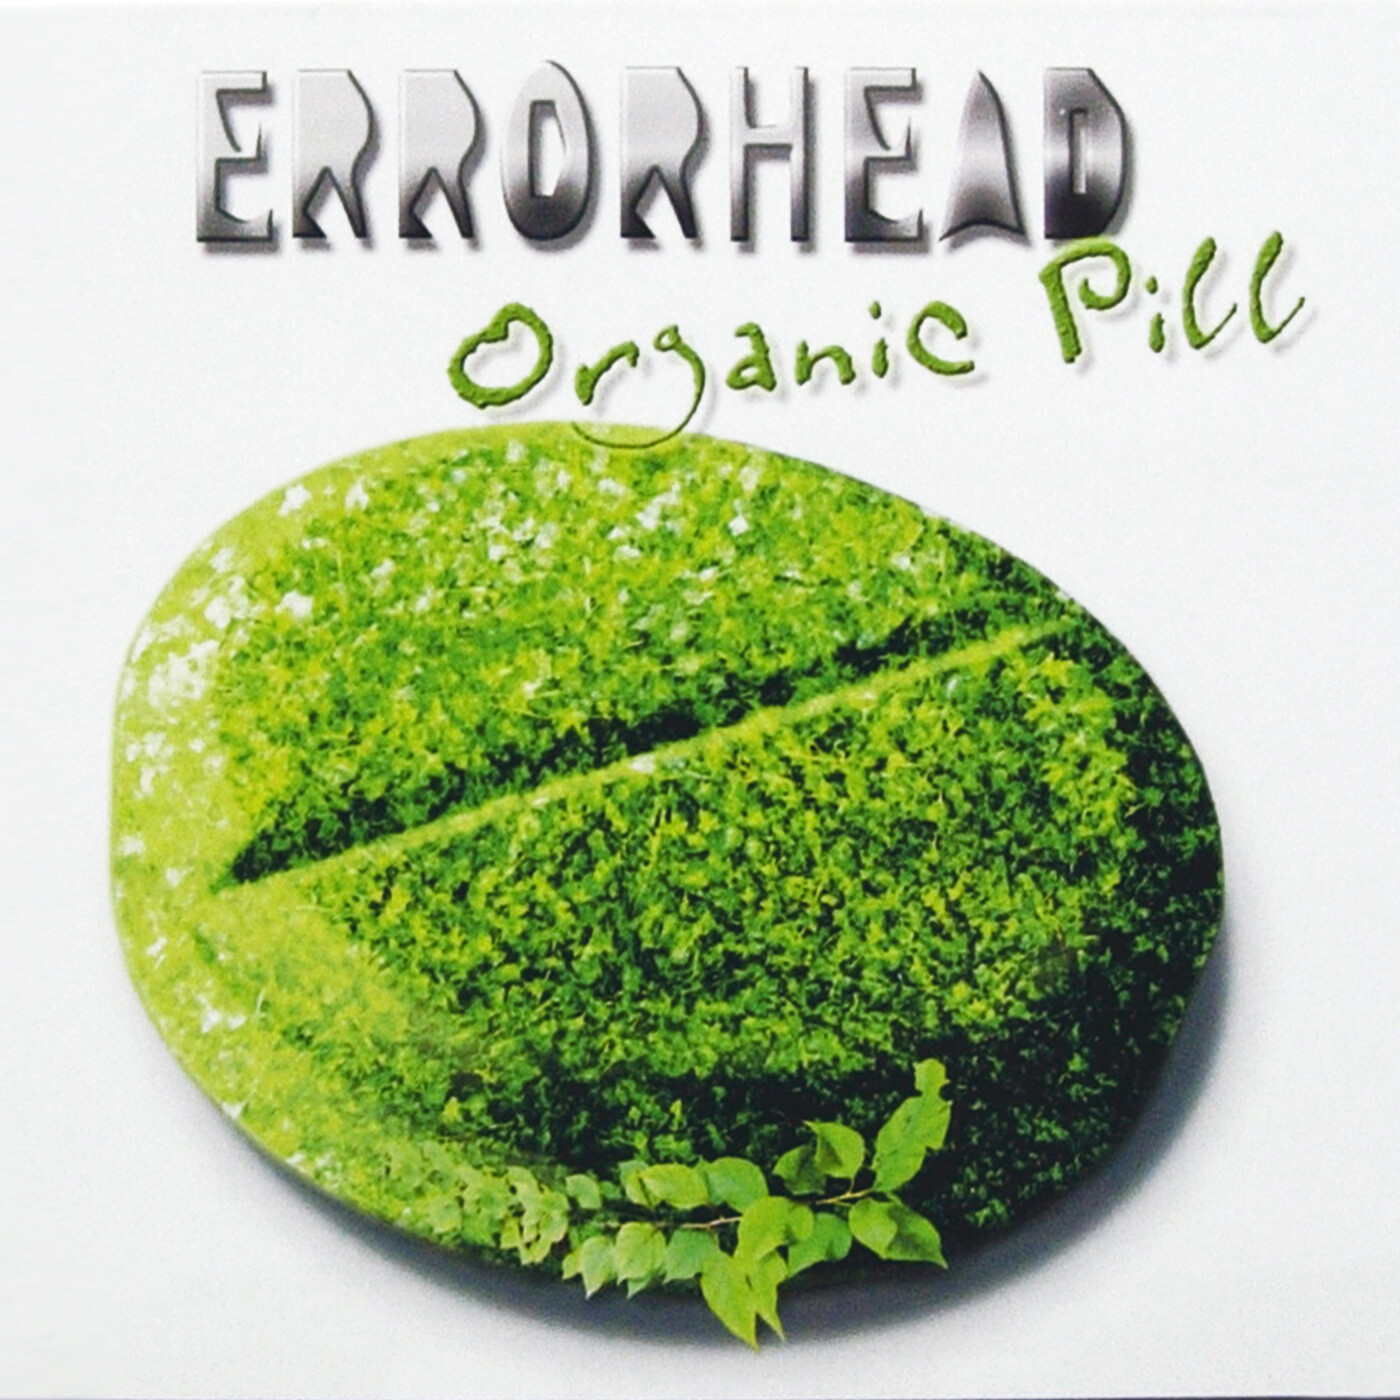 Errorhead - Organic Pill (MP3/Flac Digital Download)